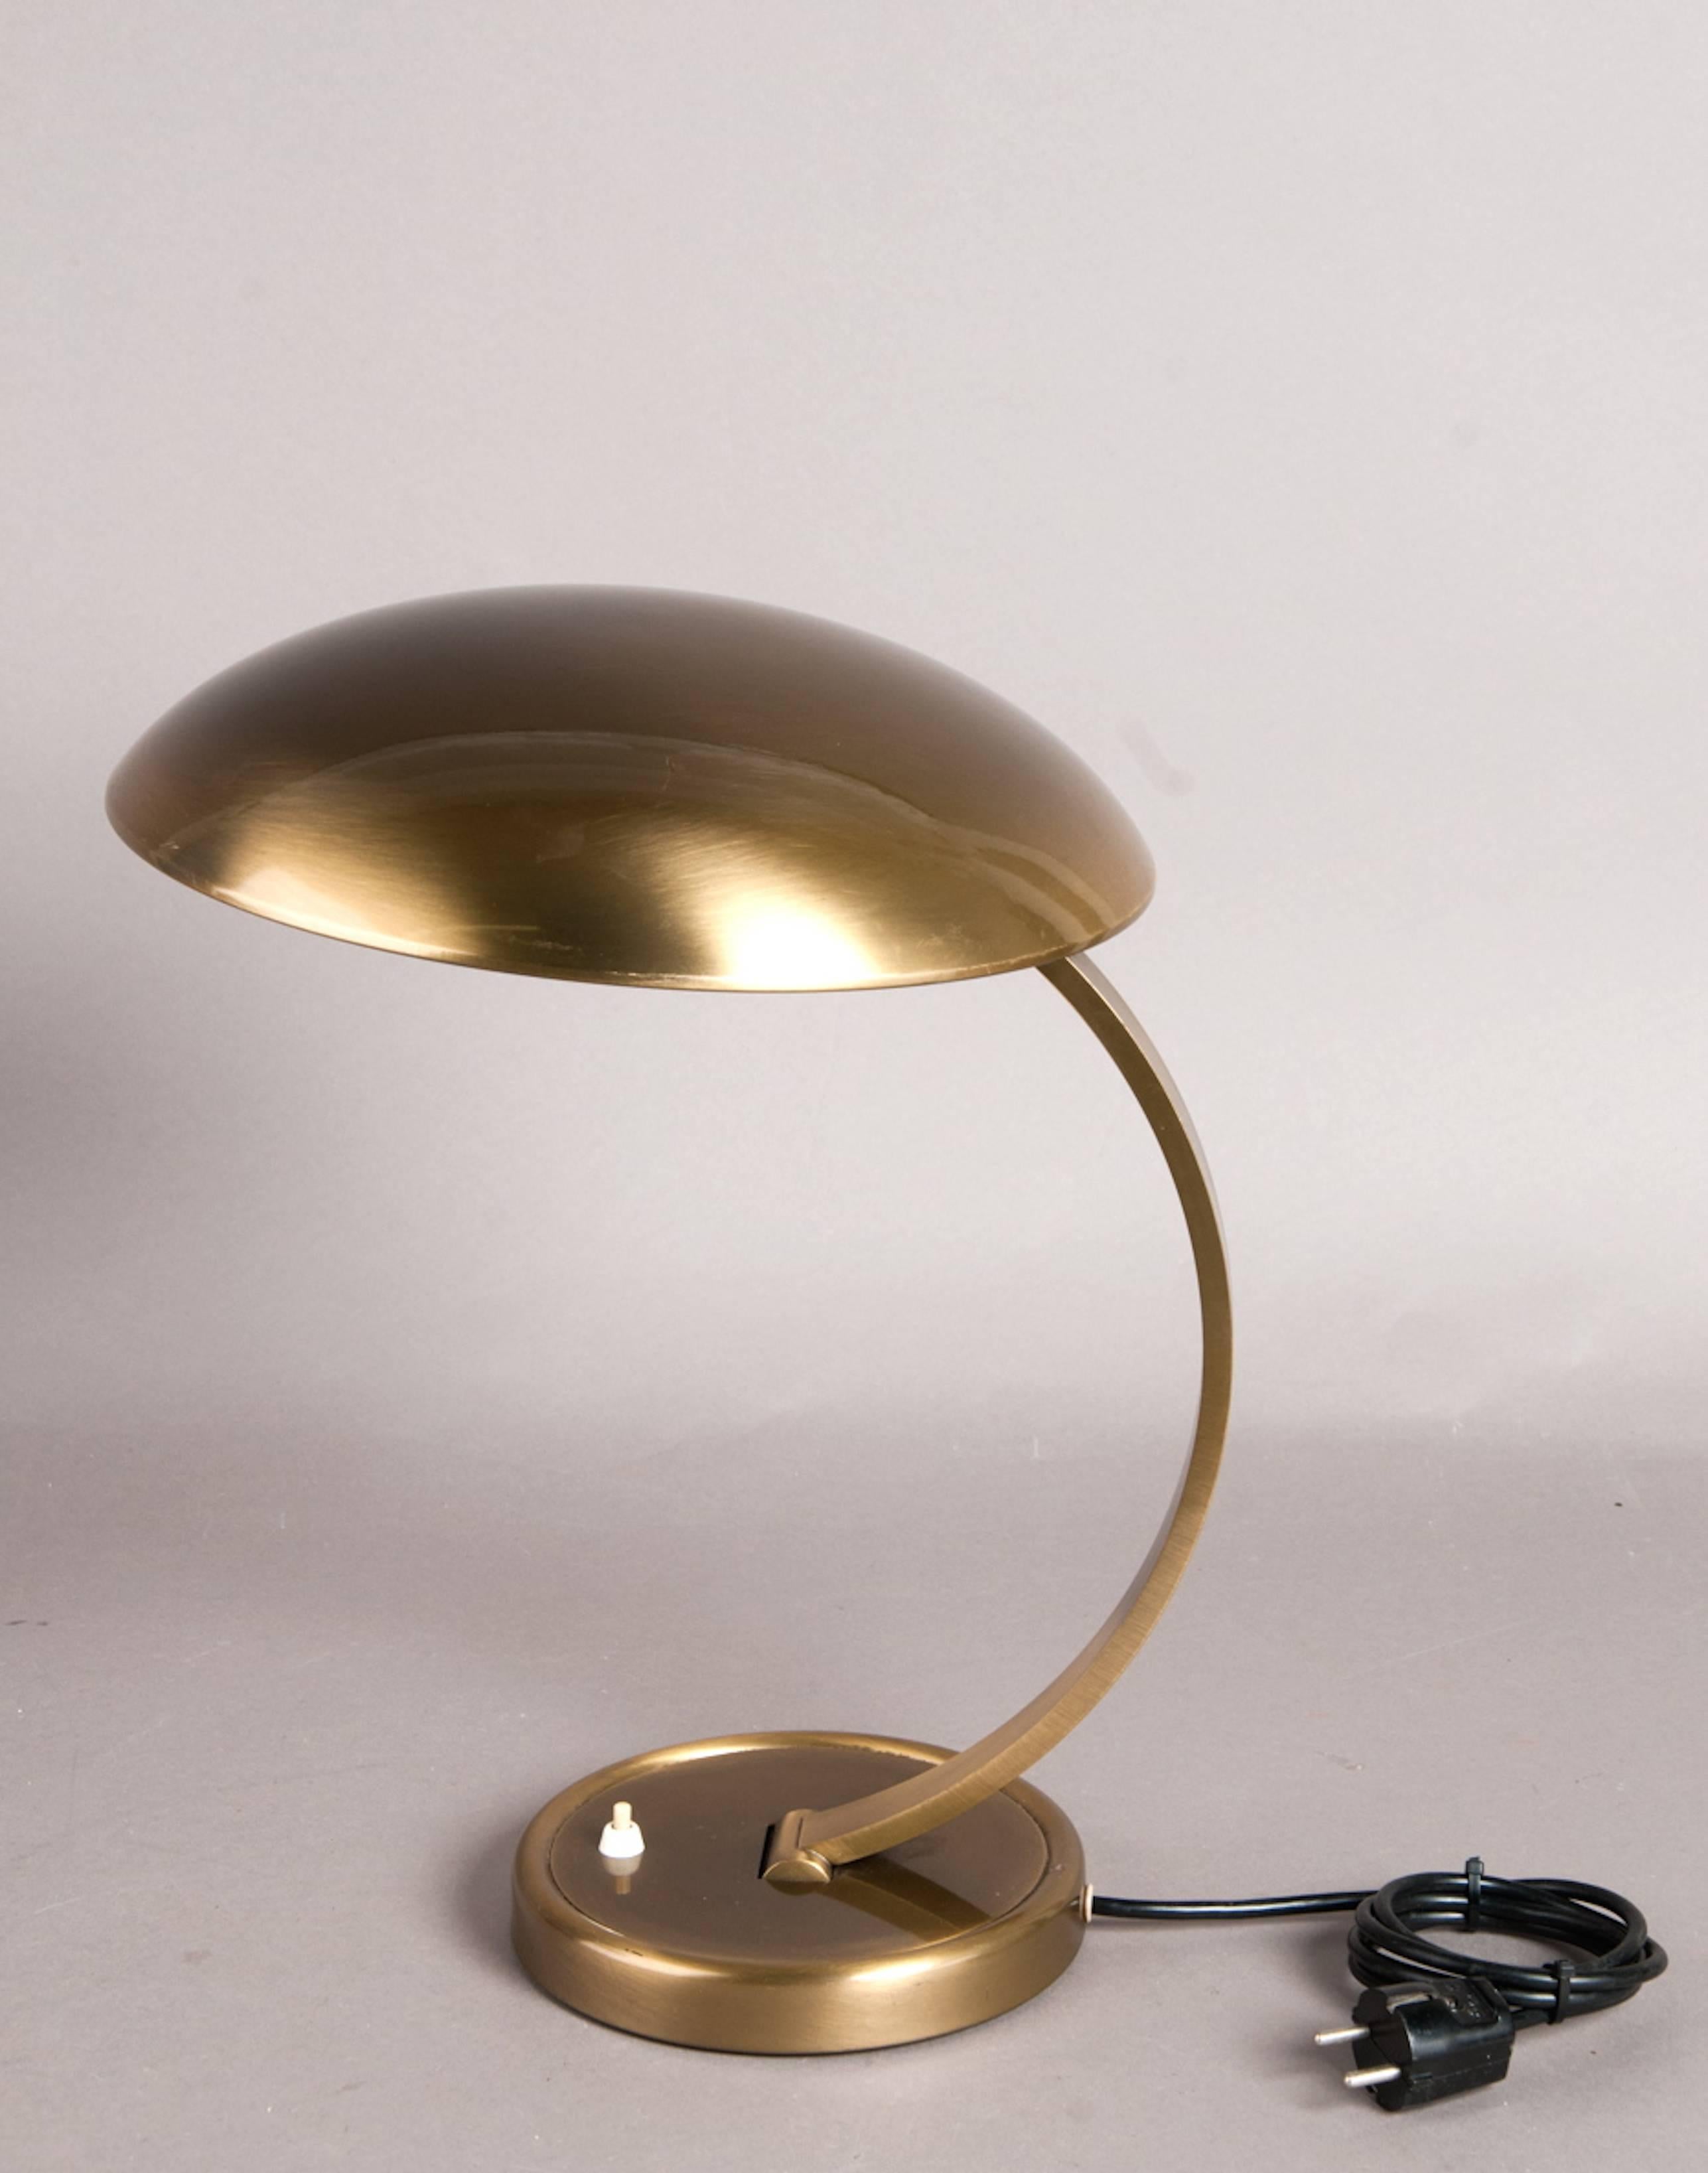 German Christian Dell Table Lamp Model 6751 for Kaiseridell, 1950